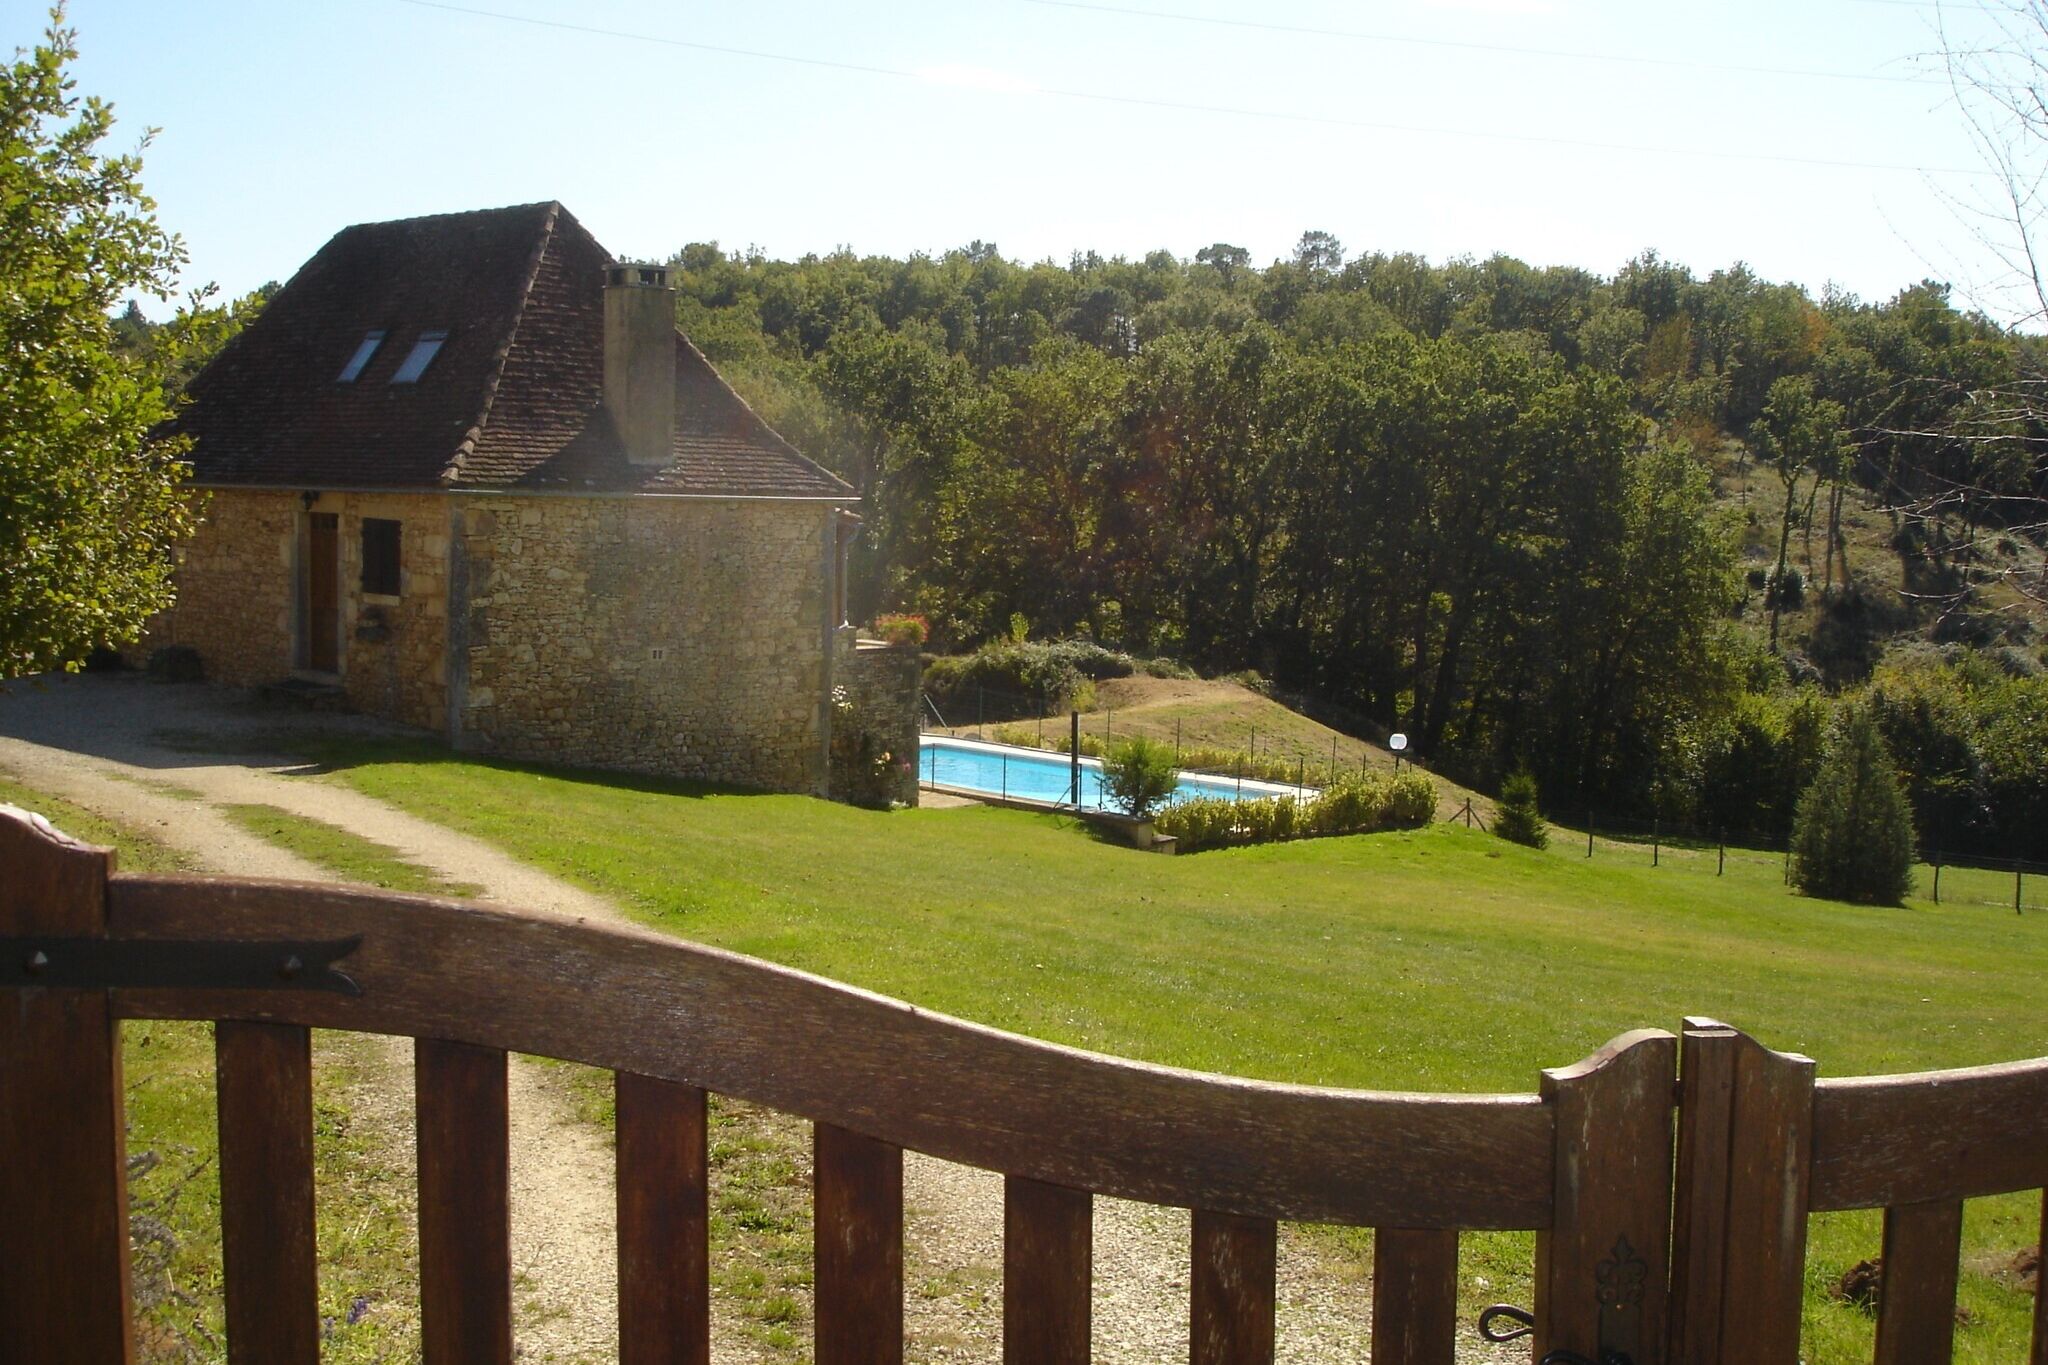 Gite située dans une zone boisée et calme, avec jardin et piscine privée.